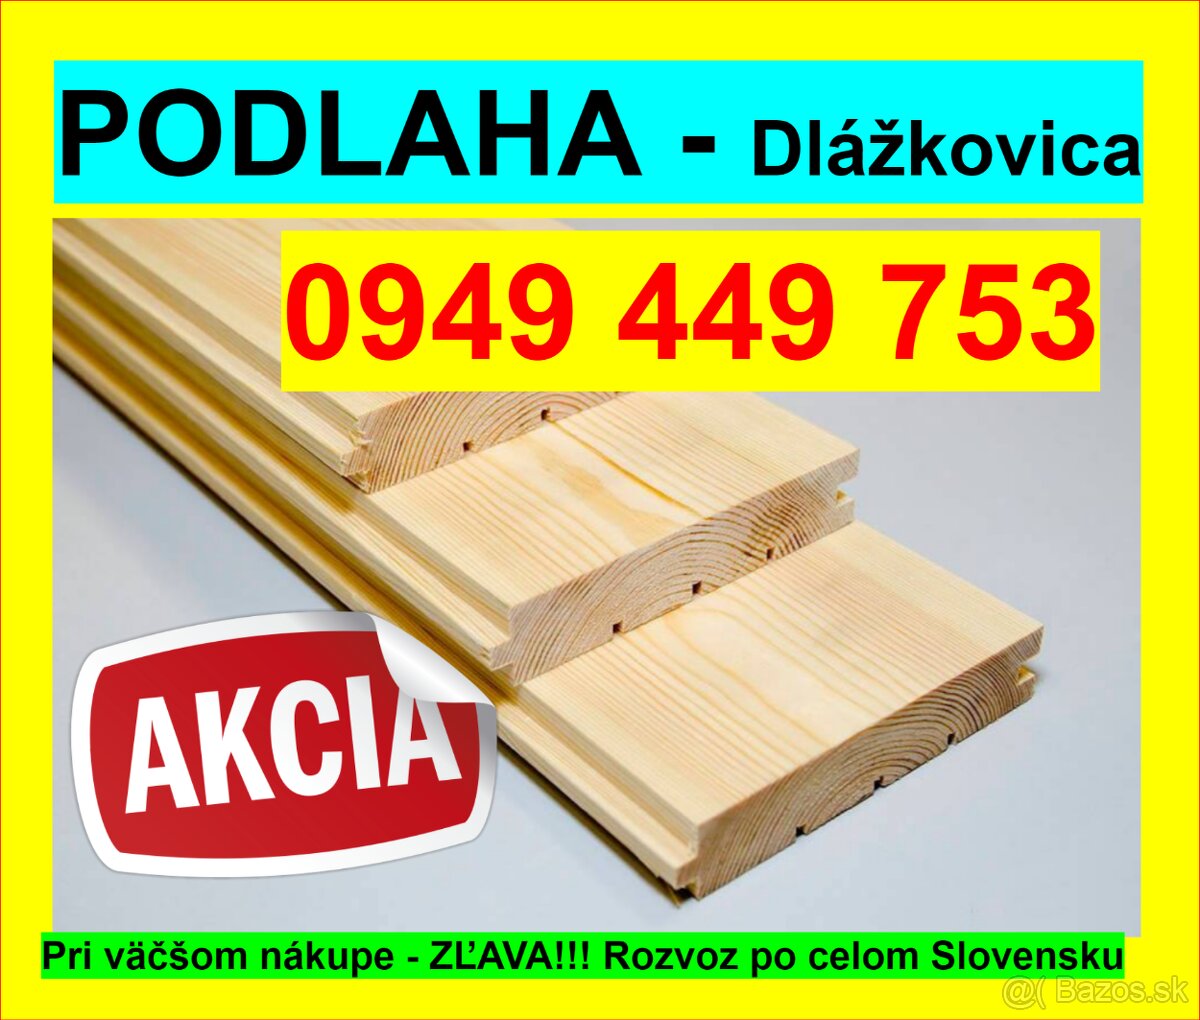 # 1 Najlacnejšia Podlaha, Dlážkovica, Palubky 0949 449 753